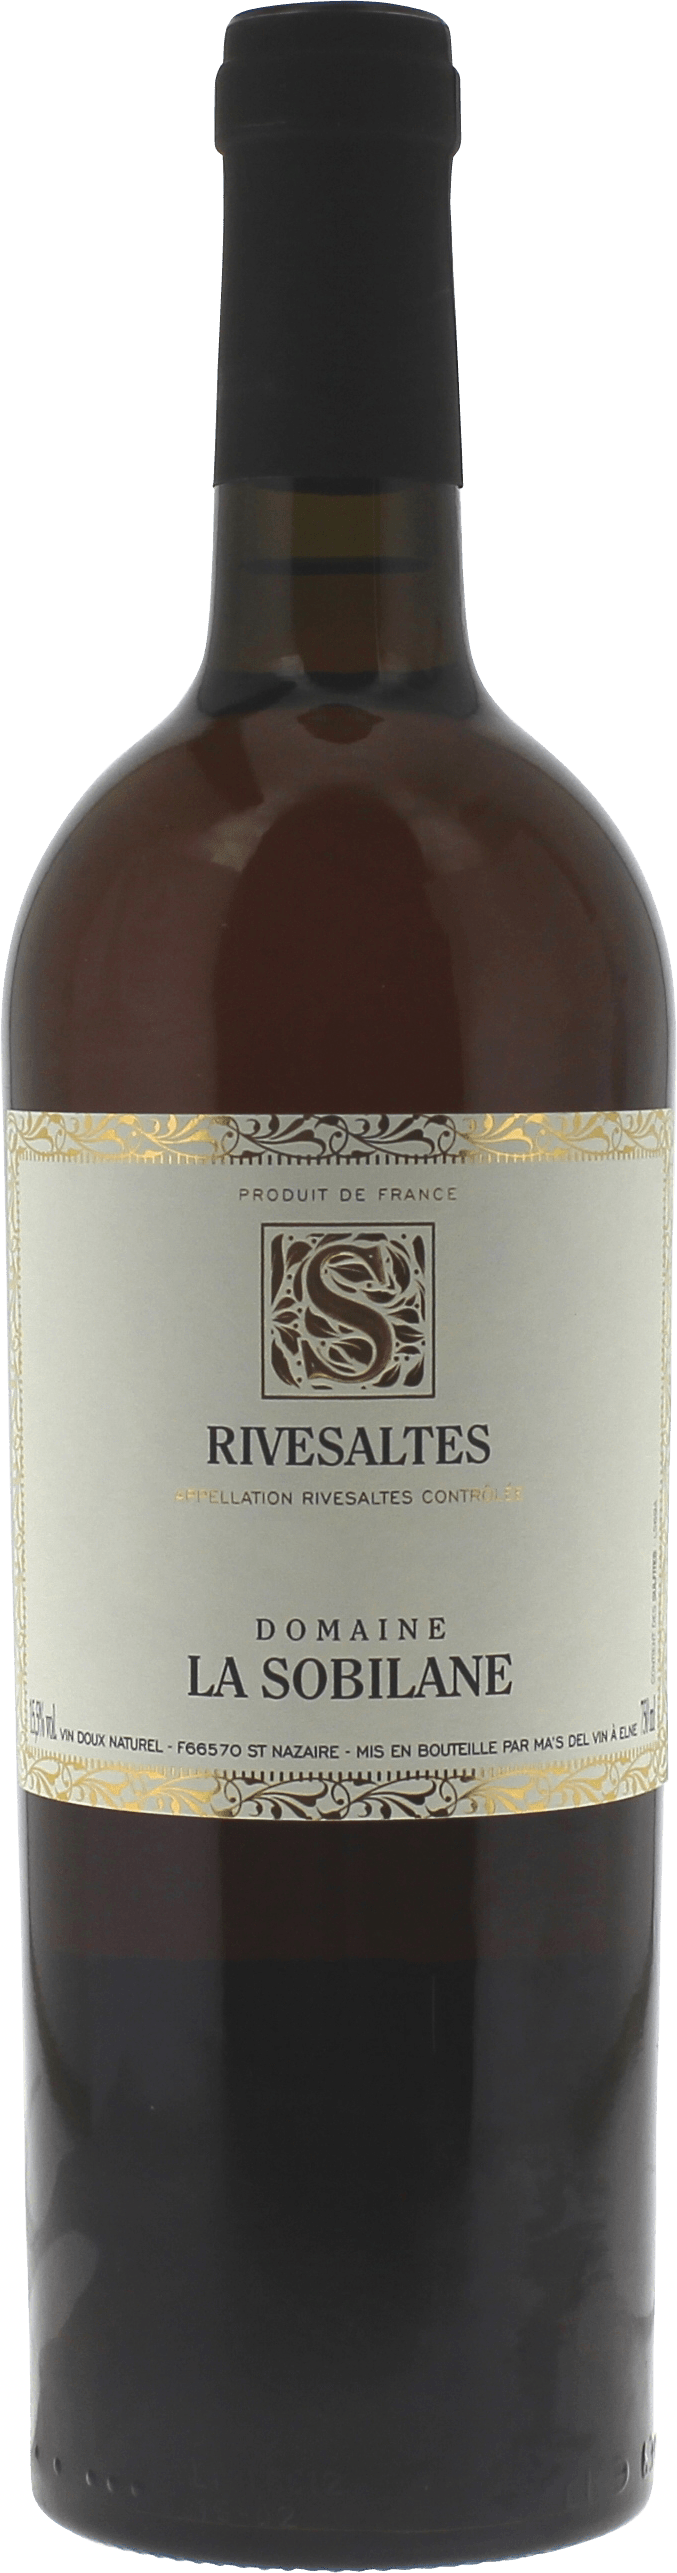 Rivesaltes domaine la sobilane 1954 Vin doux naturel Rivesaltes, Vin doux naturel